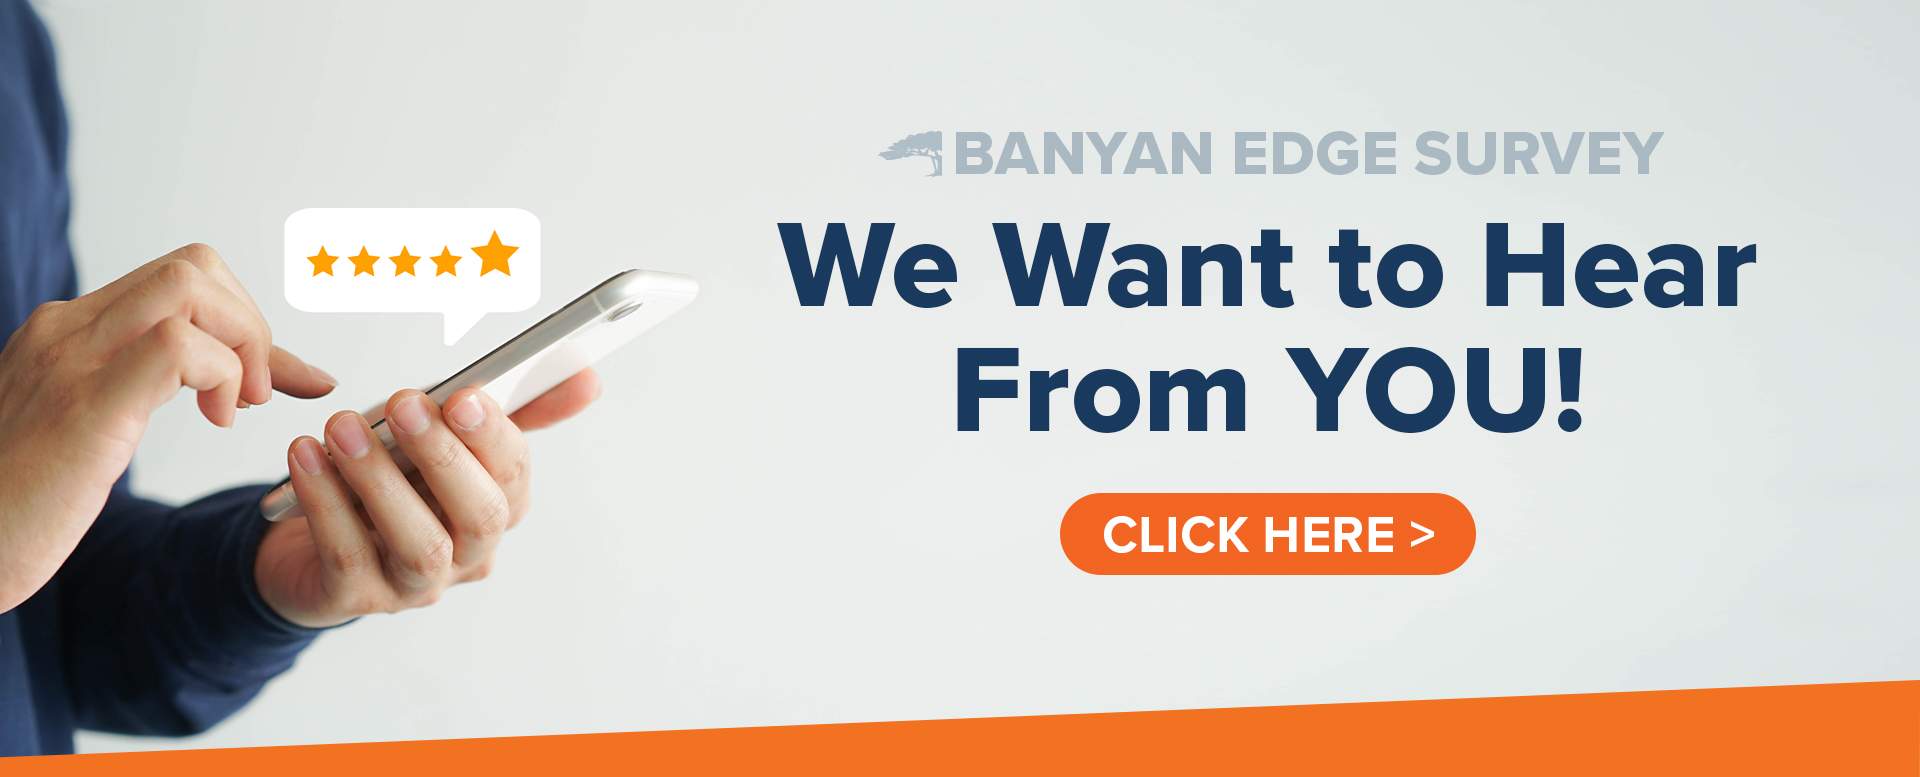 Banyan Edge Survey